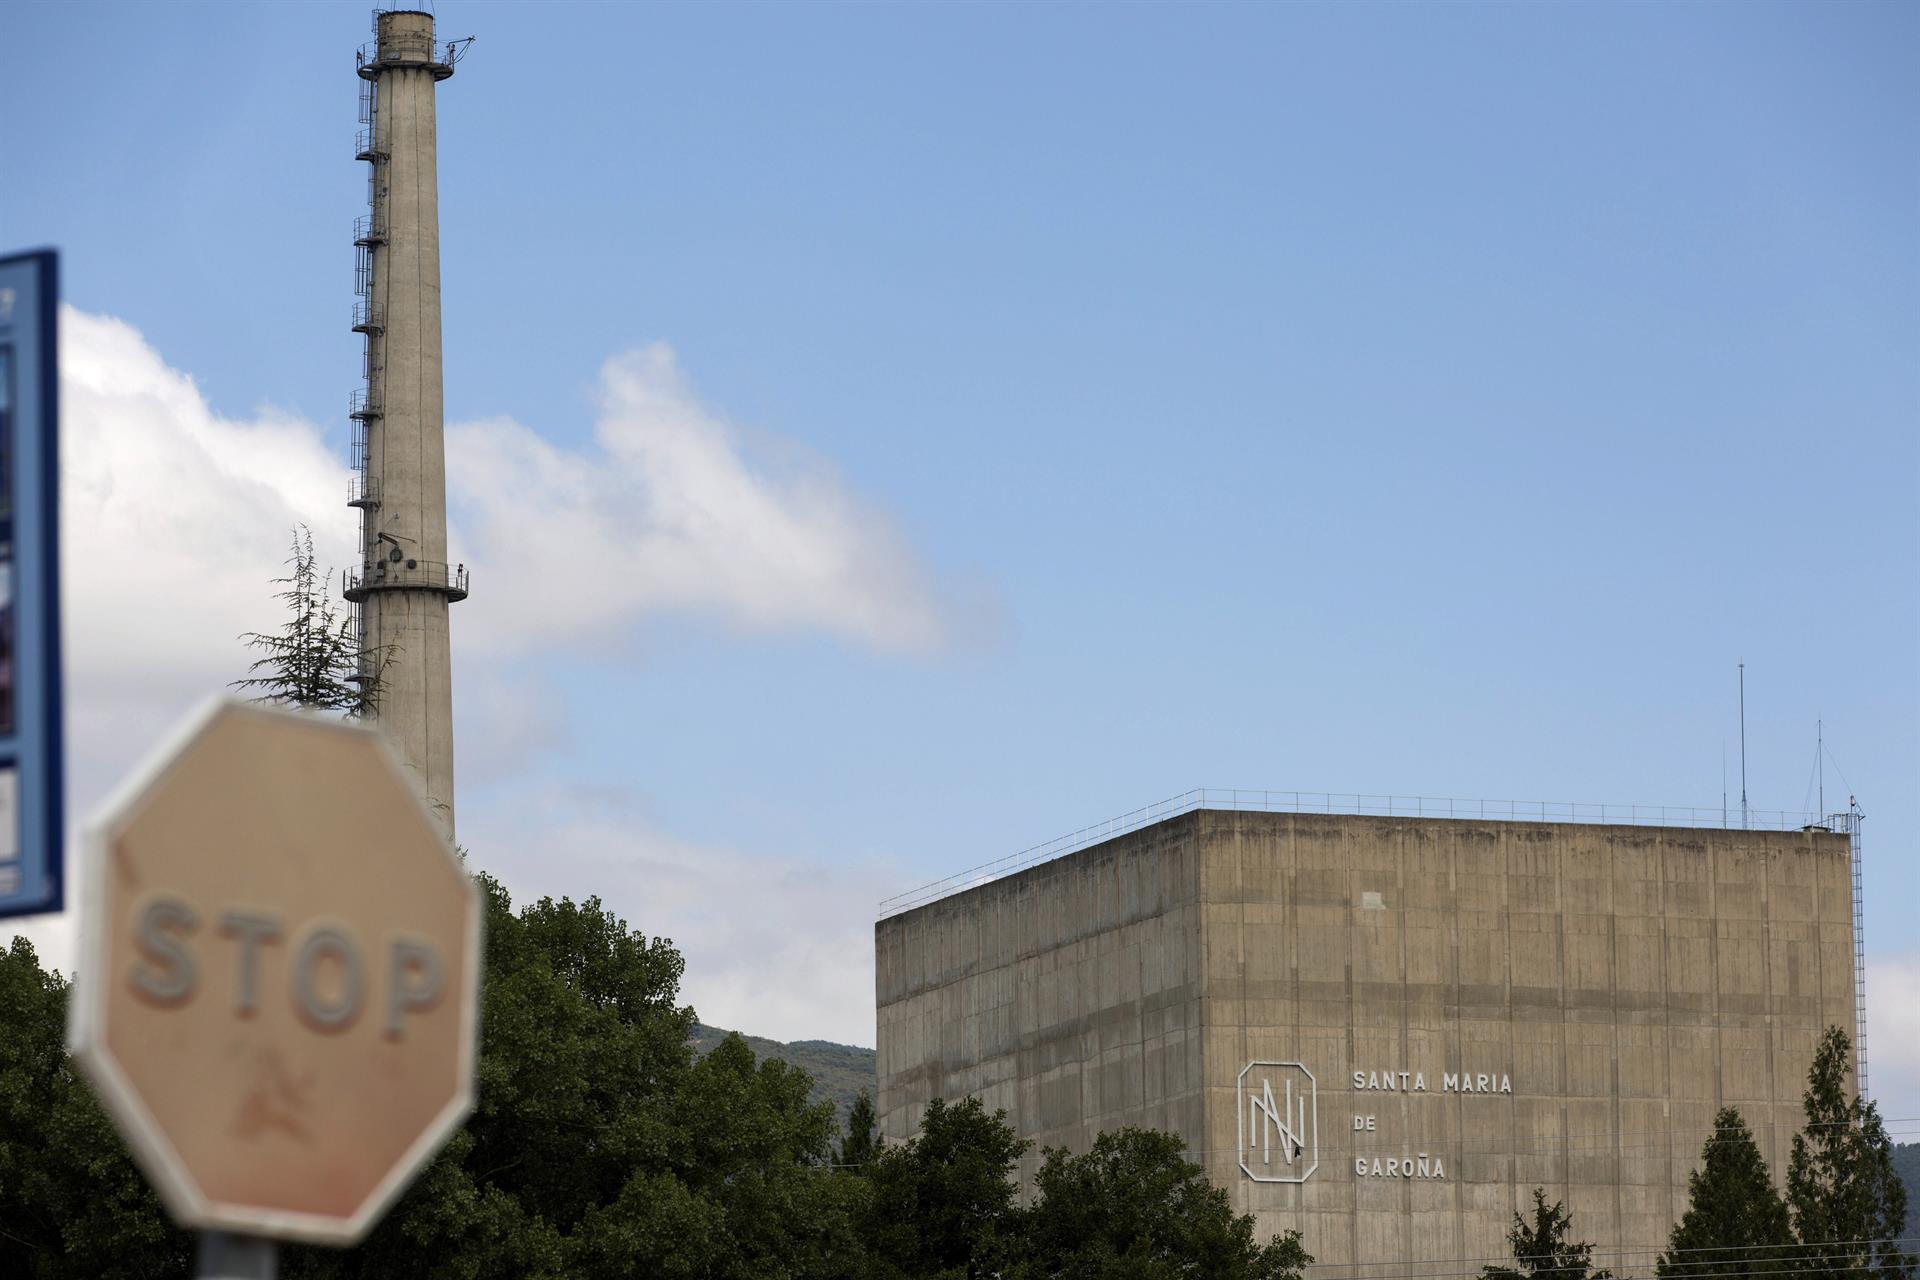 Imagen de archivo. Vista del reactor de la central nuclear de Santa María de Garoña (Burgos).EFE